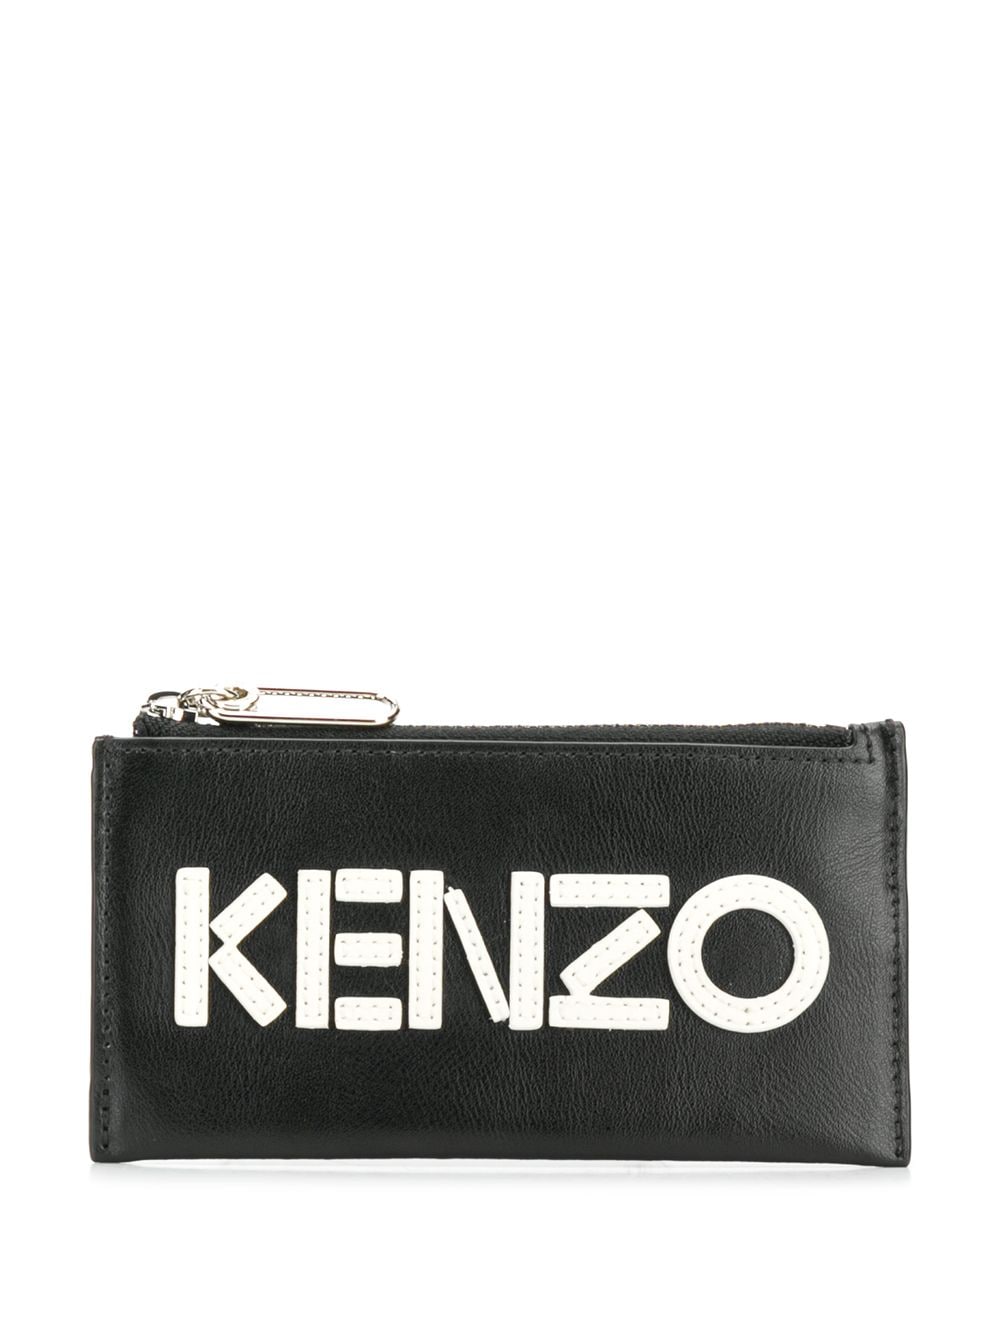 фото Kenzo кошелек с логотипом